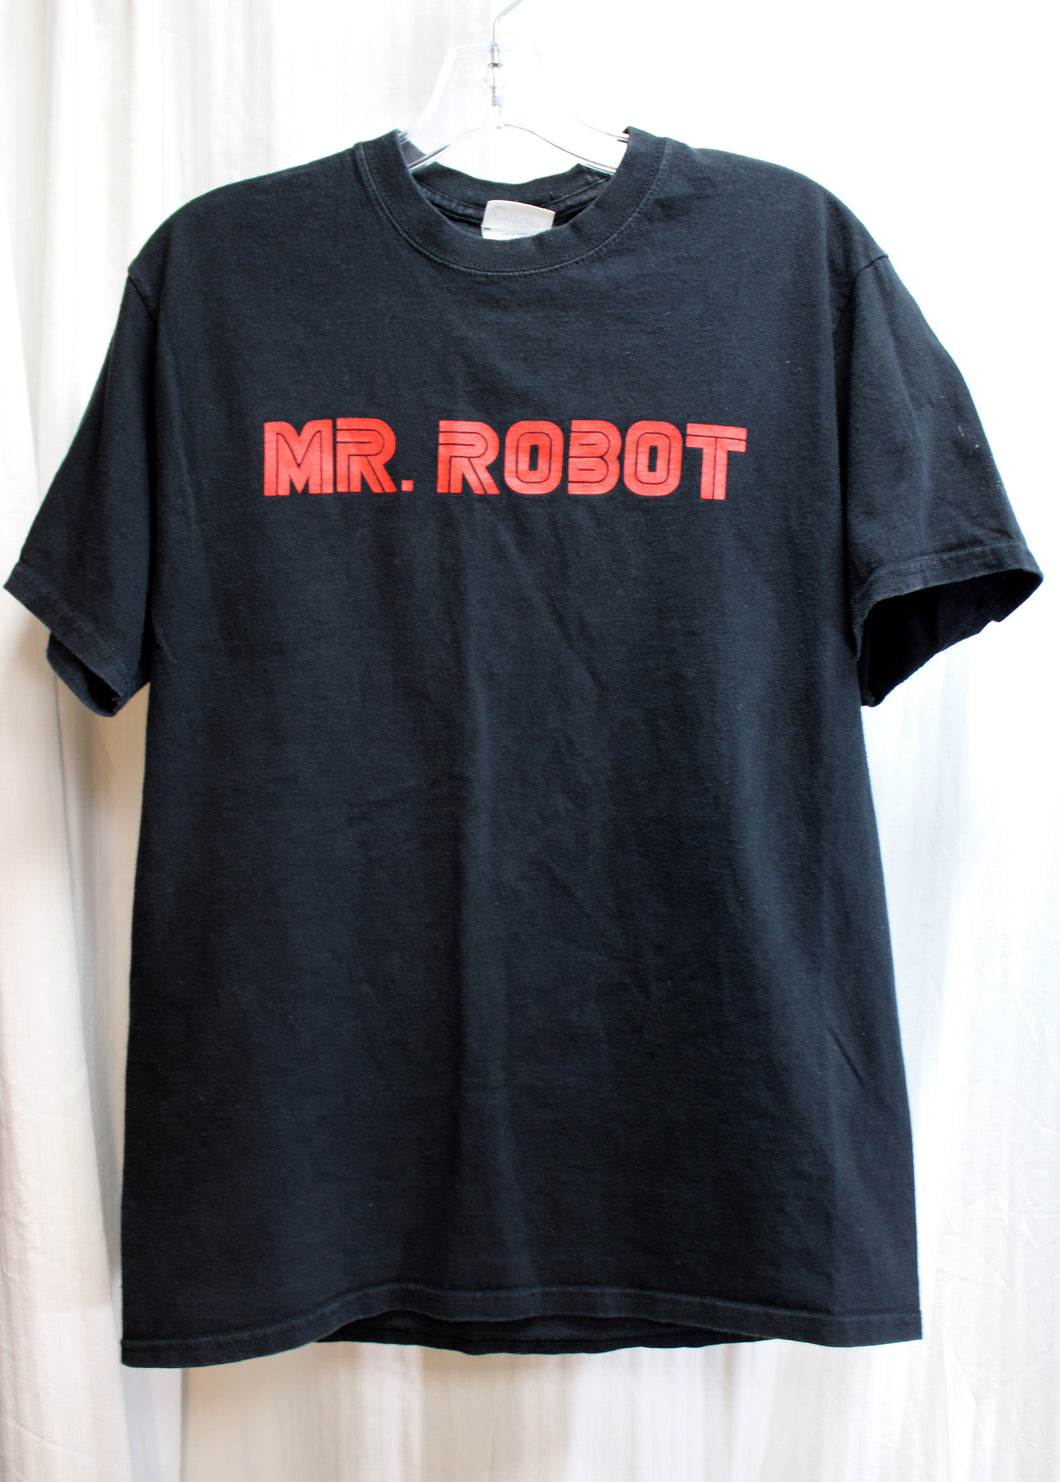 Mr. Robot (TV Show) Black T-Shirt - Size M